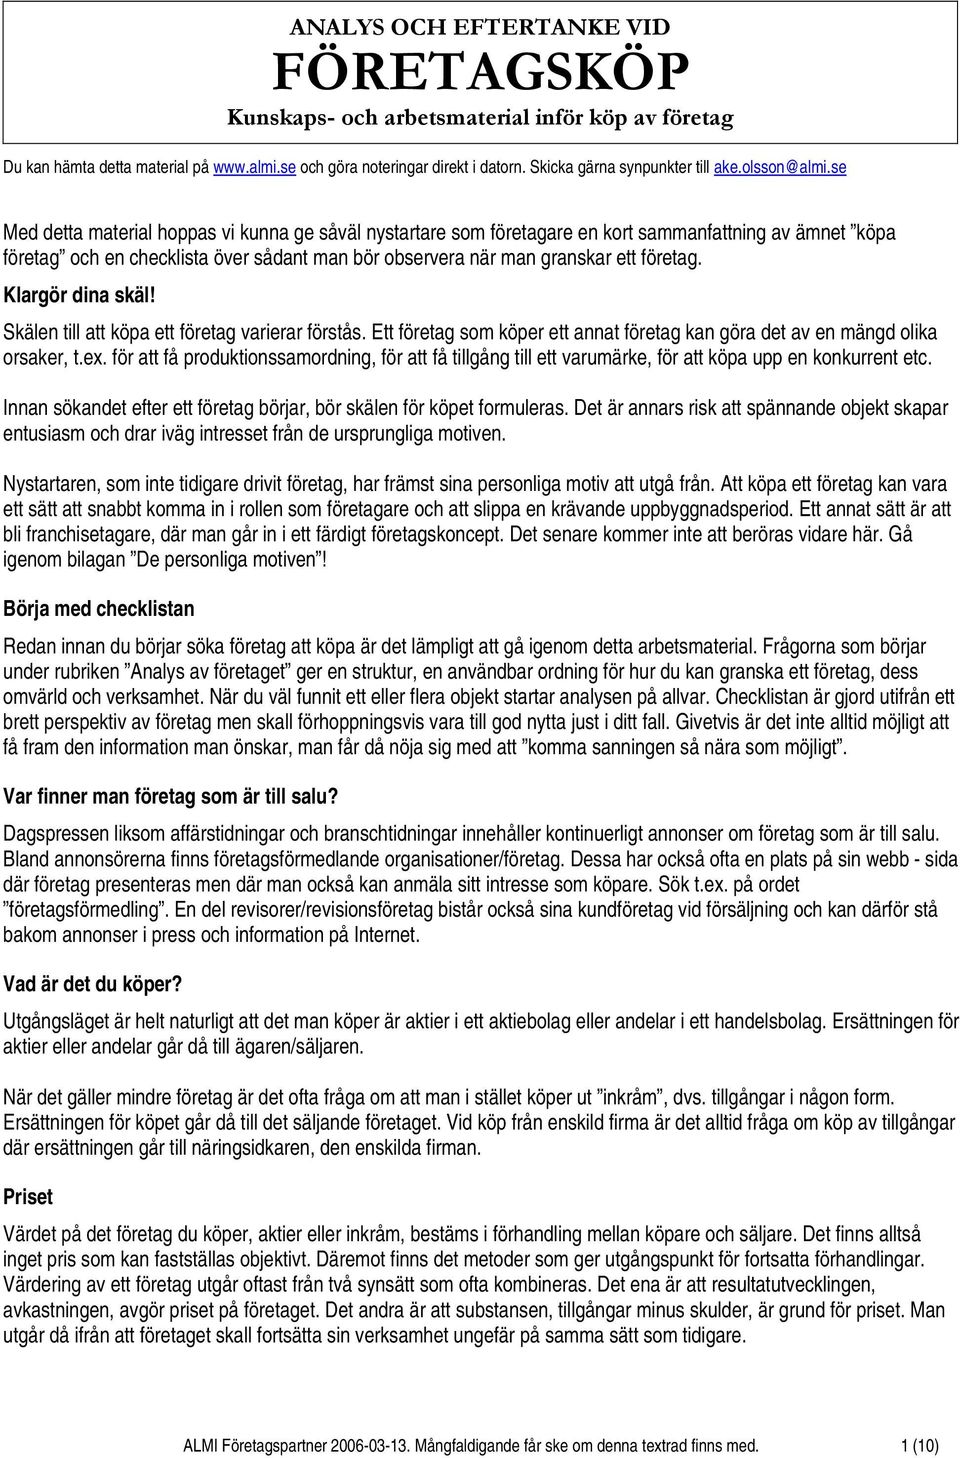 Analys och eftertanke vid FÖRETAGSKÖP. Kunskaps- och arbetsmaterial inför  köp av företag - PDF Gratis nedladdning